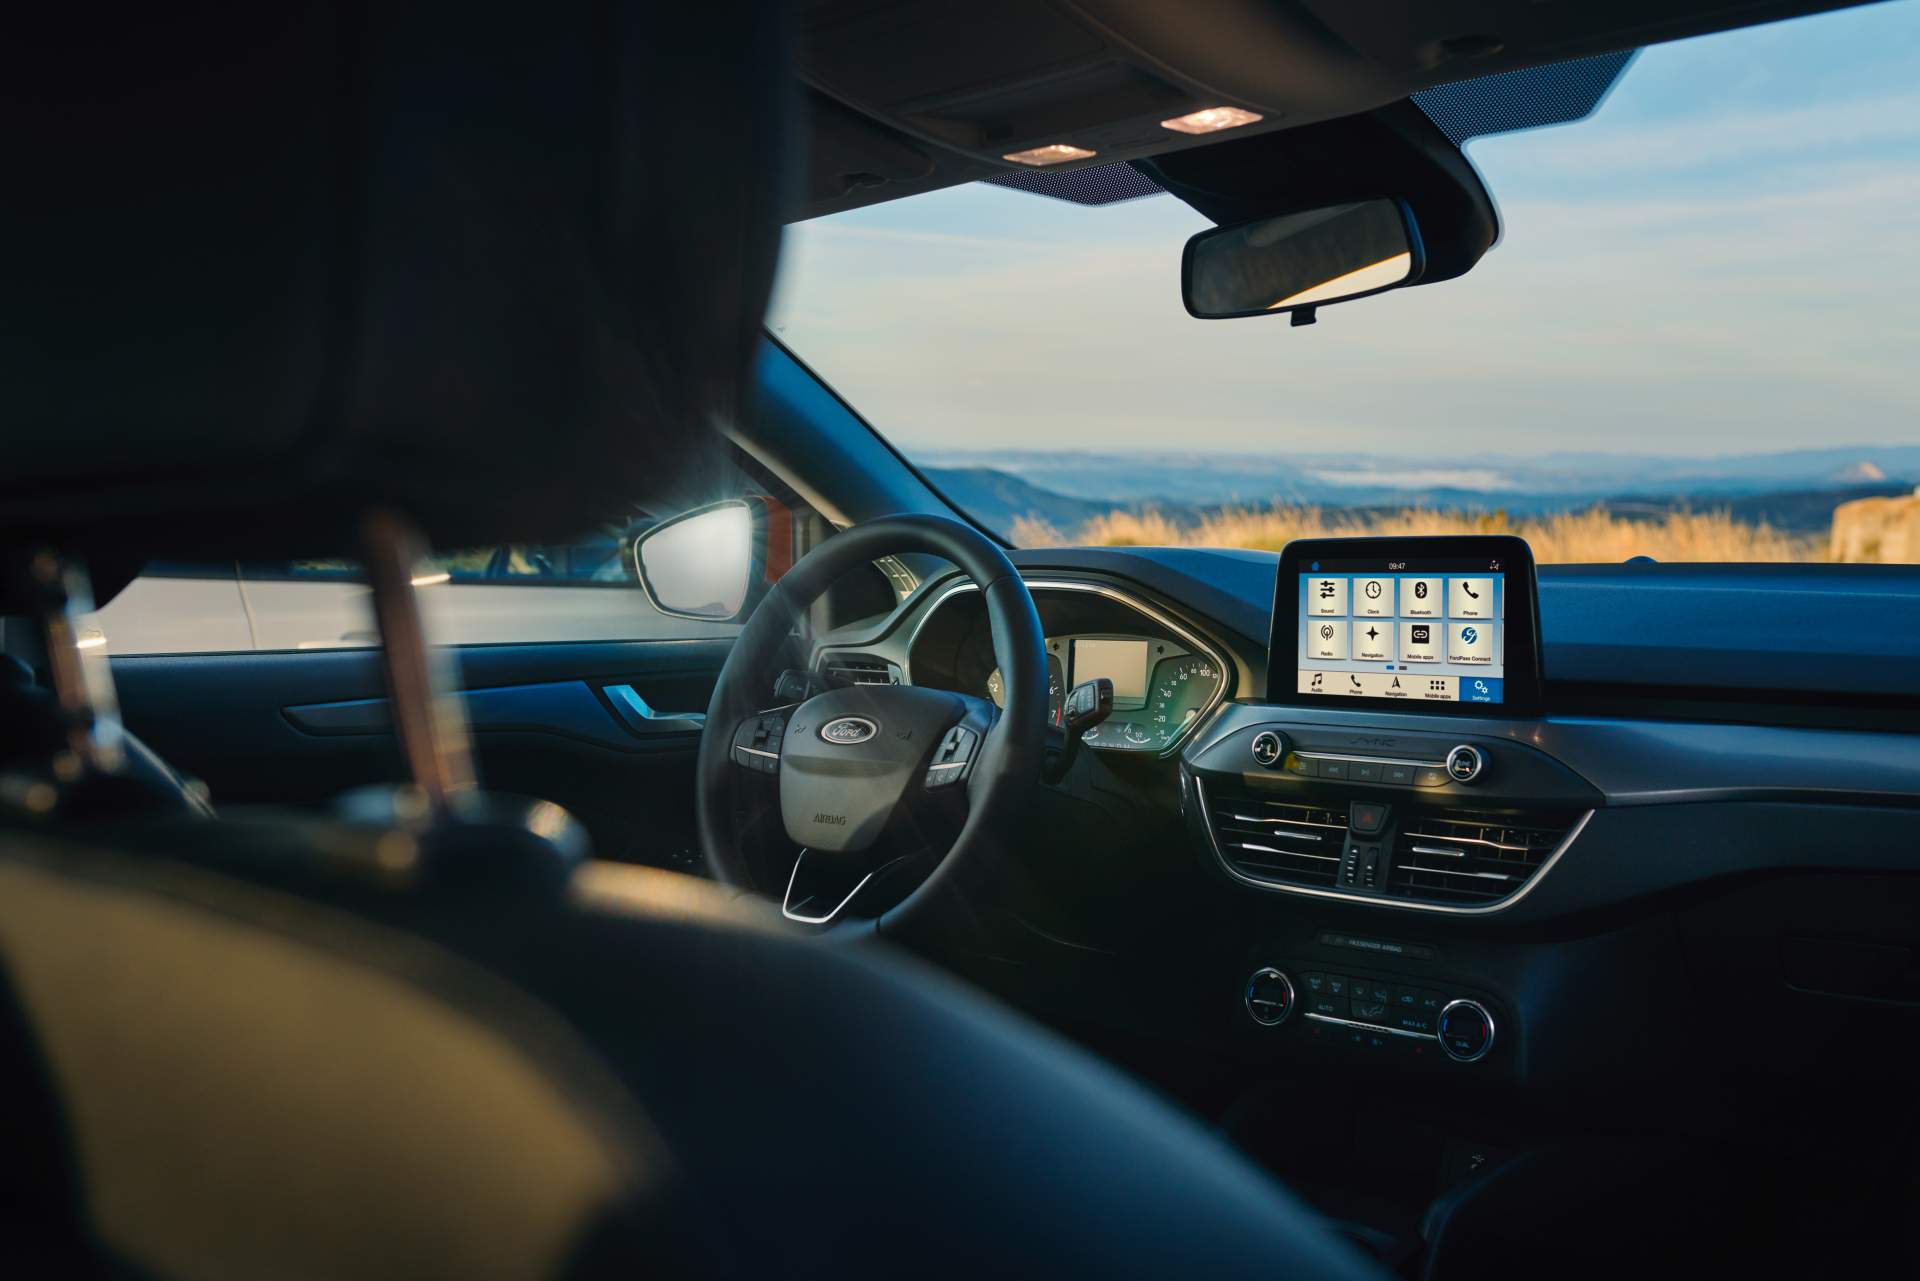 Immagine interni nuova Ford Focus Active Wagon 2019